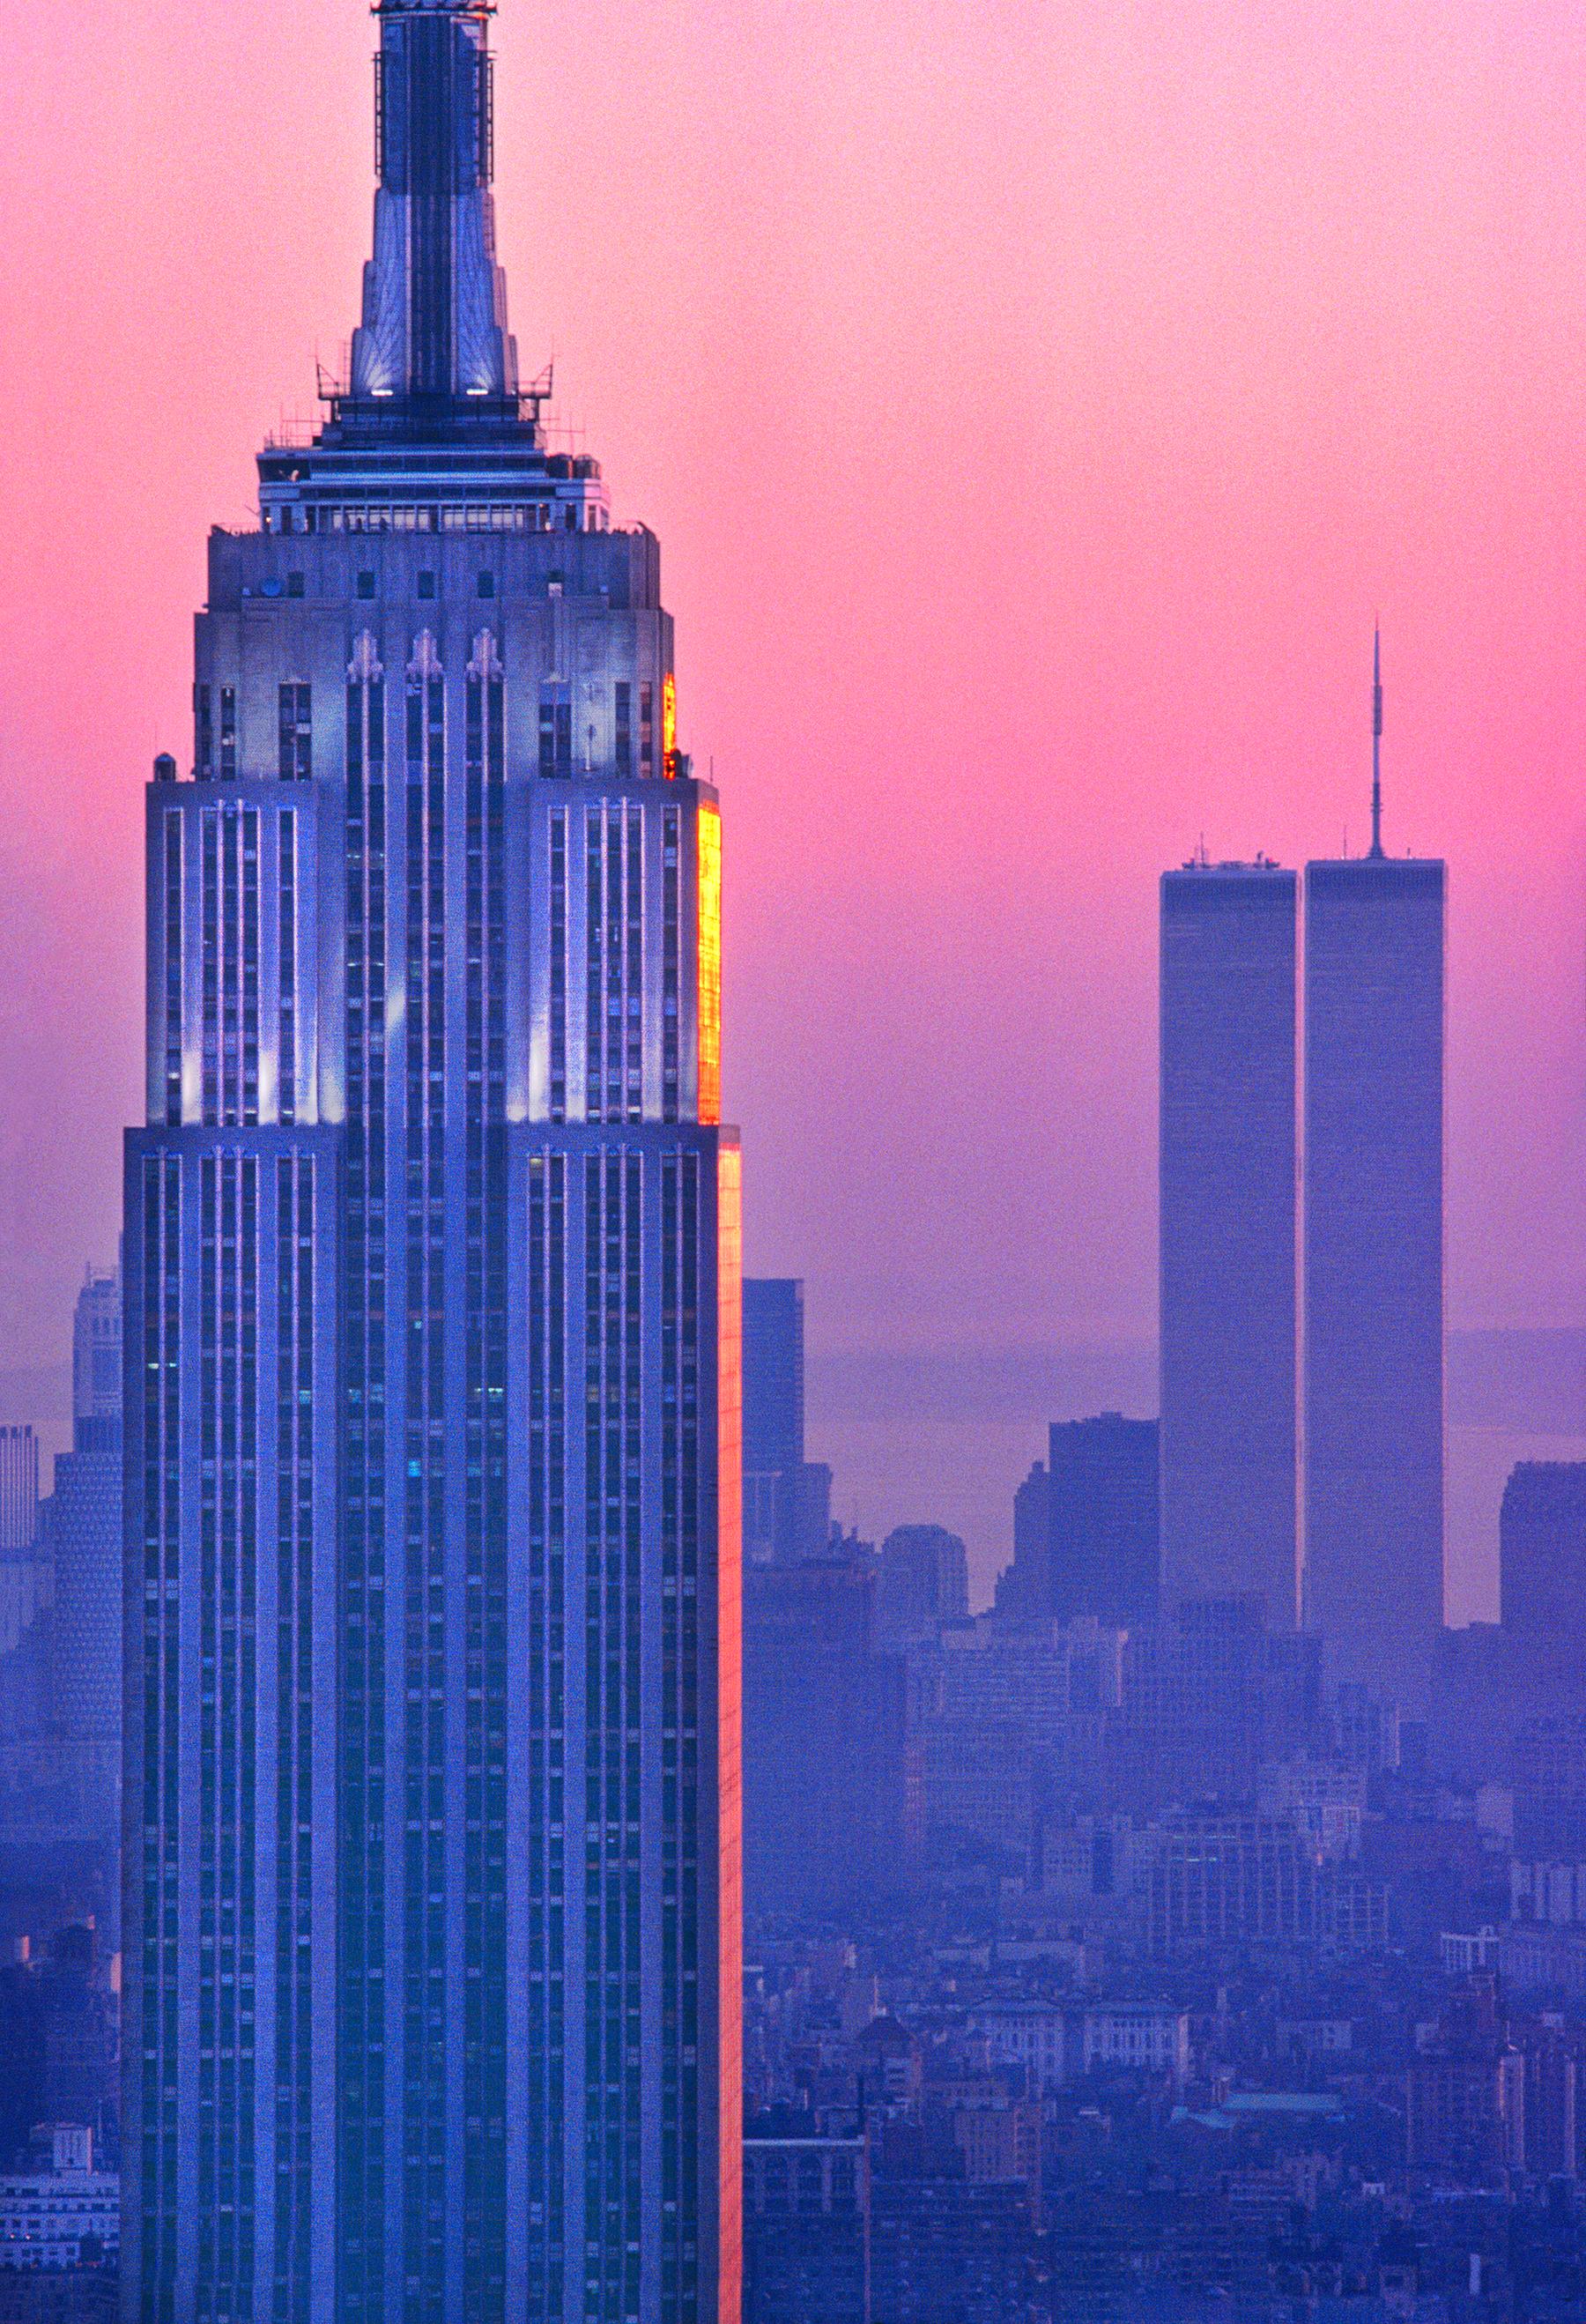 Deux icônes architecturales de la ville de New York juxtaposées l'une à l'autre dans un ciel magenta.  L'Empire State Building et les Twin Towers, photographiés avant un boom immobilier à Manhattan, offrent une vue claire et dégagée.   Signé, daté,